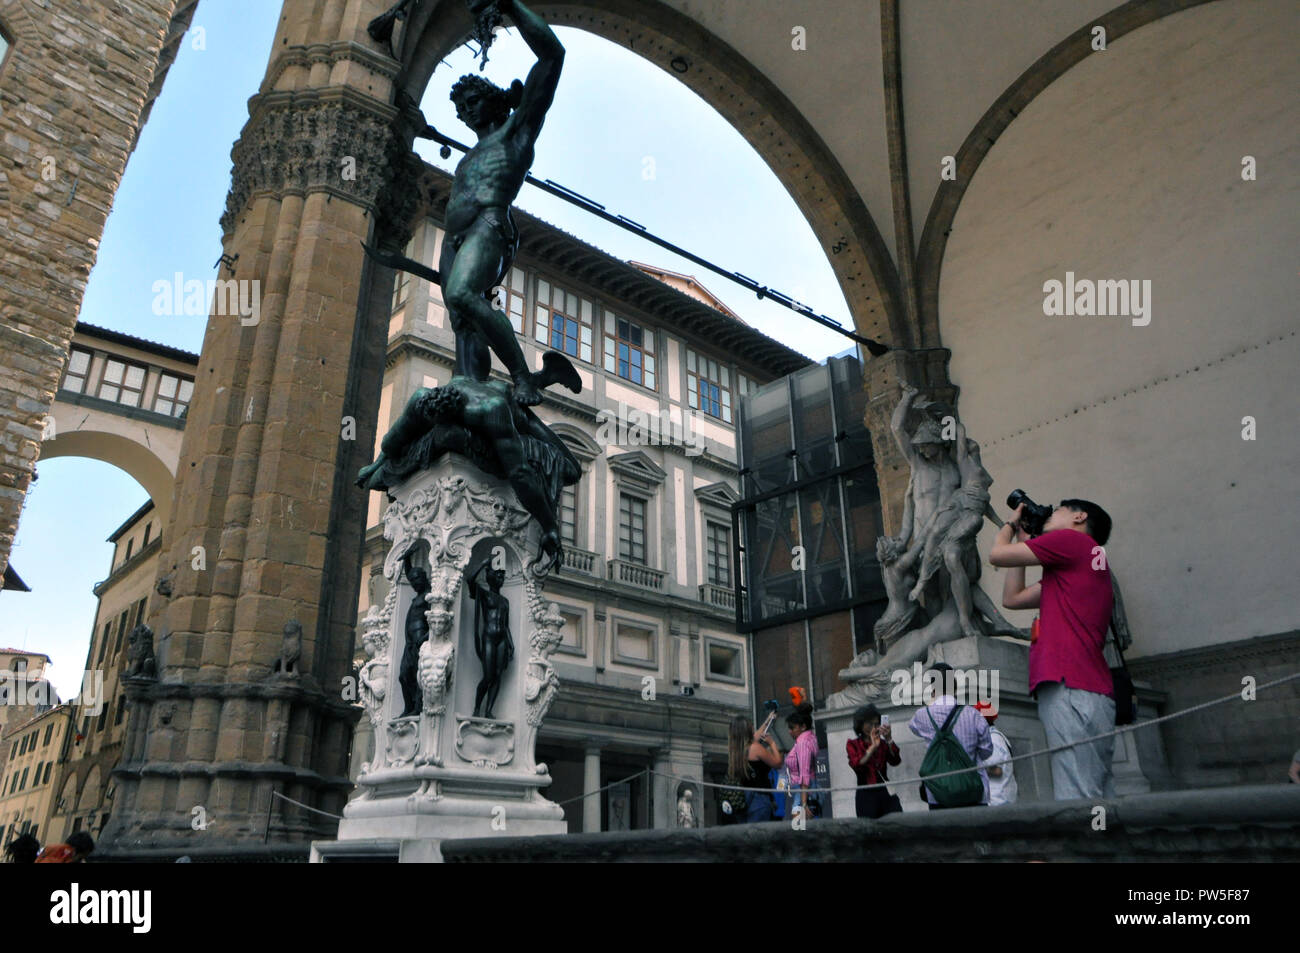 FLORENCE, ITALIE - 12 juin 2016 : Le héros grec Persée statue sur la place centrale sous la colonnade.Toscane, Italie Banque D'Images